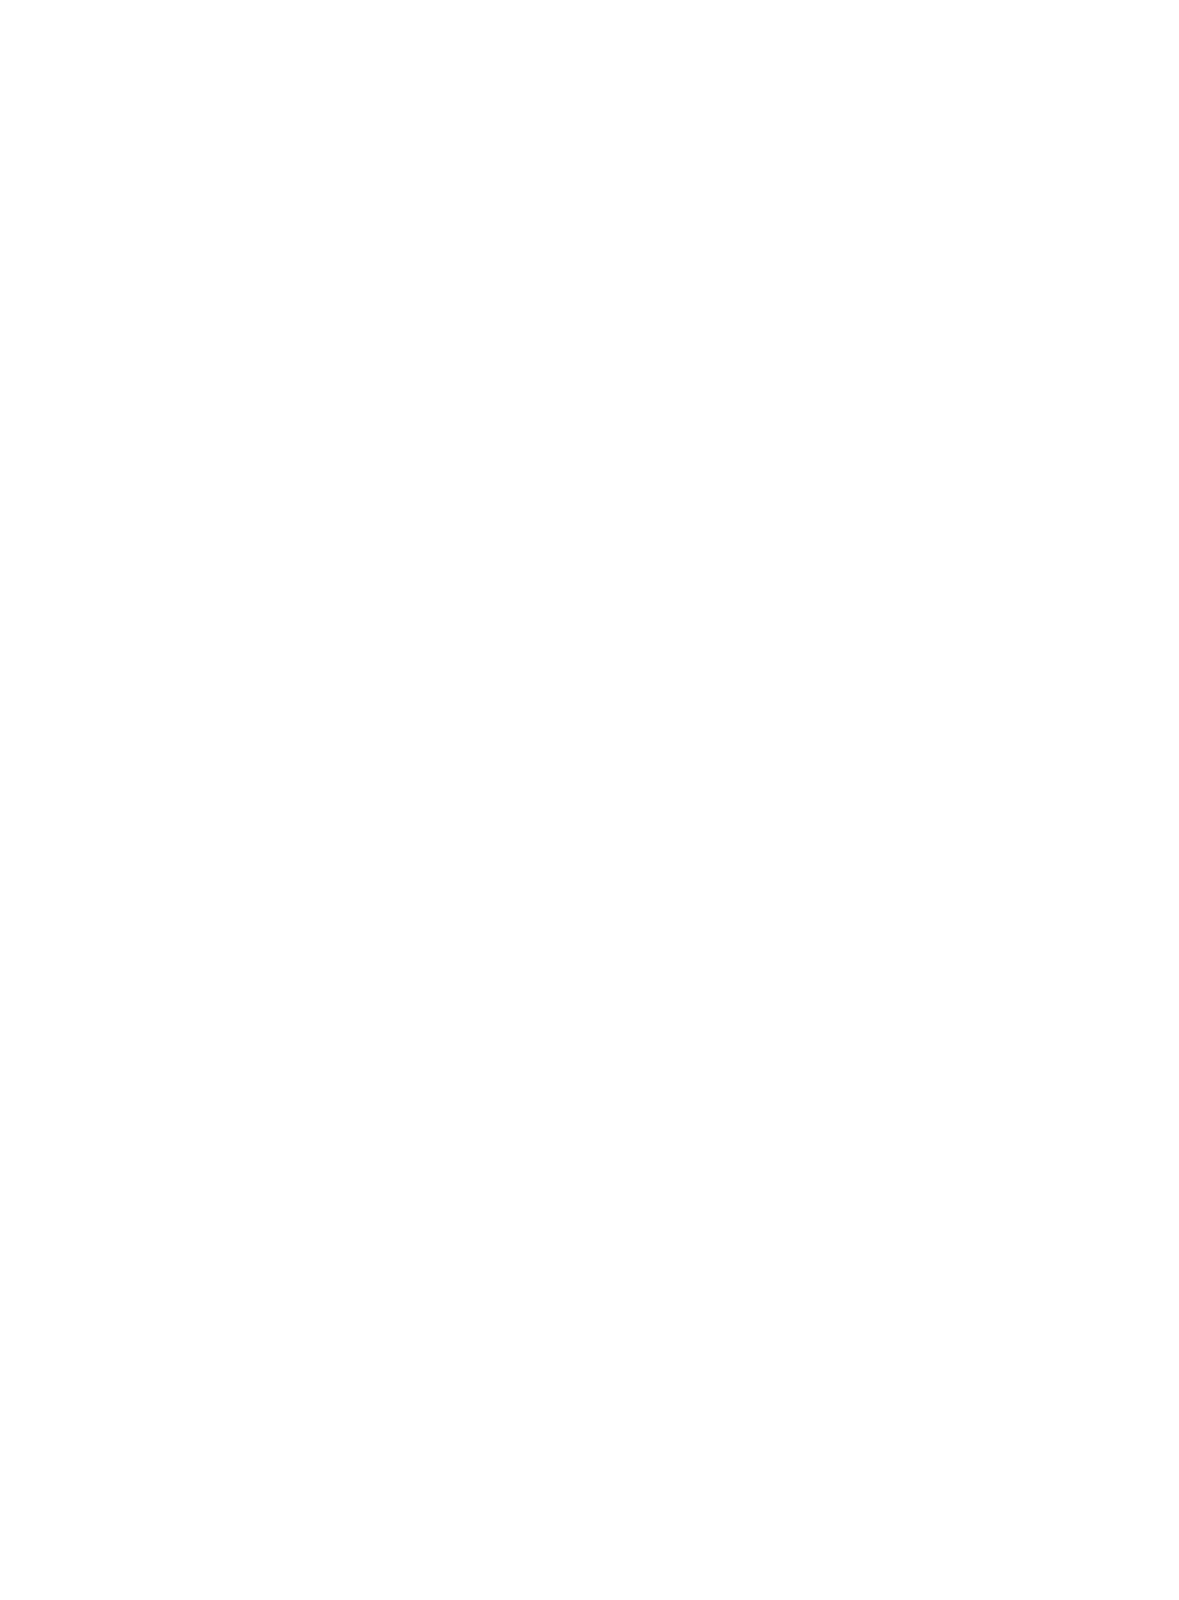 26時のマスカレイド　メジャーデビューミニアルバム「ちゅるサマ！」ジャケット写真公開　音楽ランキングでウィークリートップを狙うサムネイル画像!